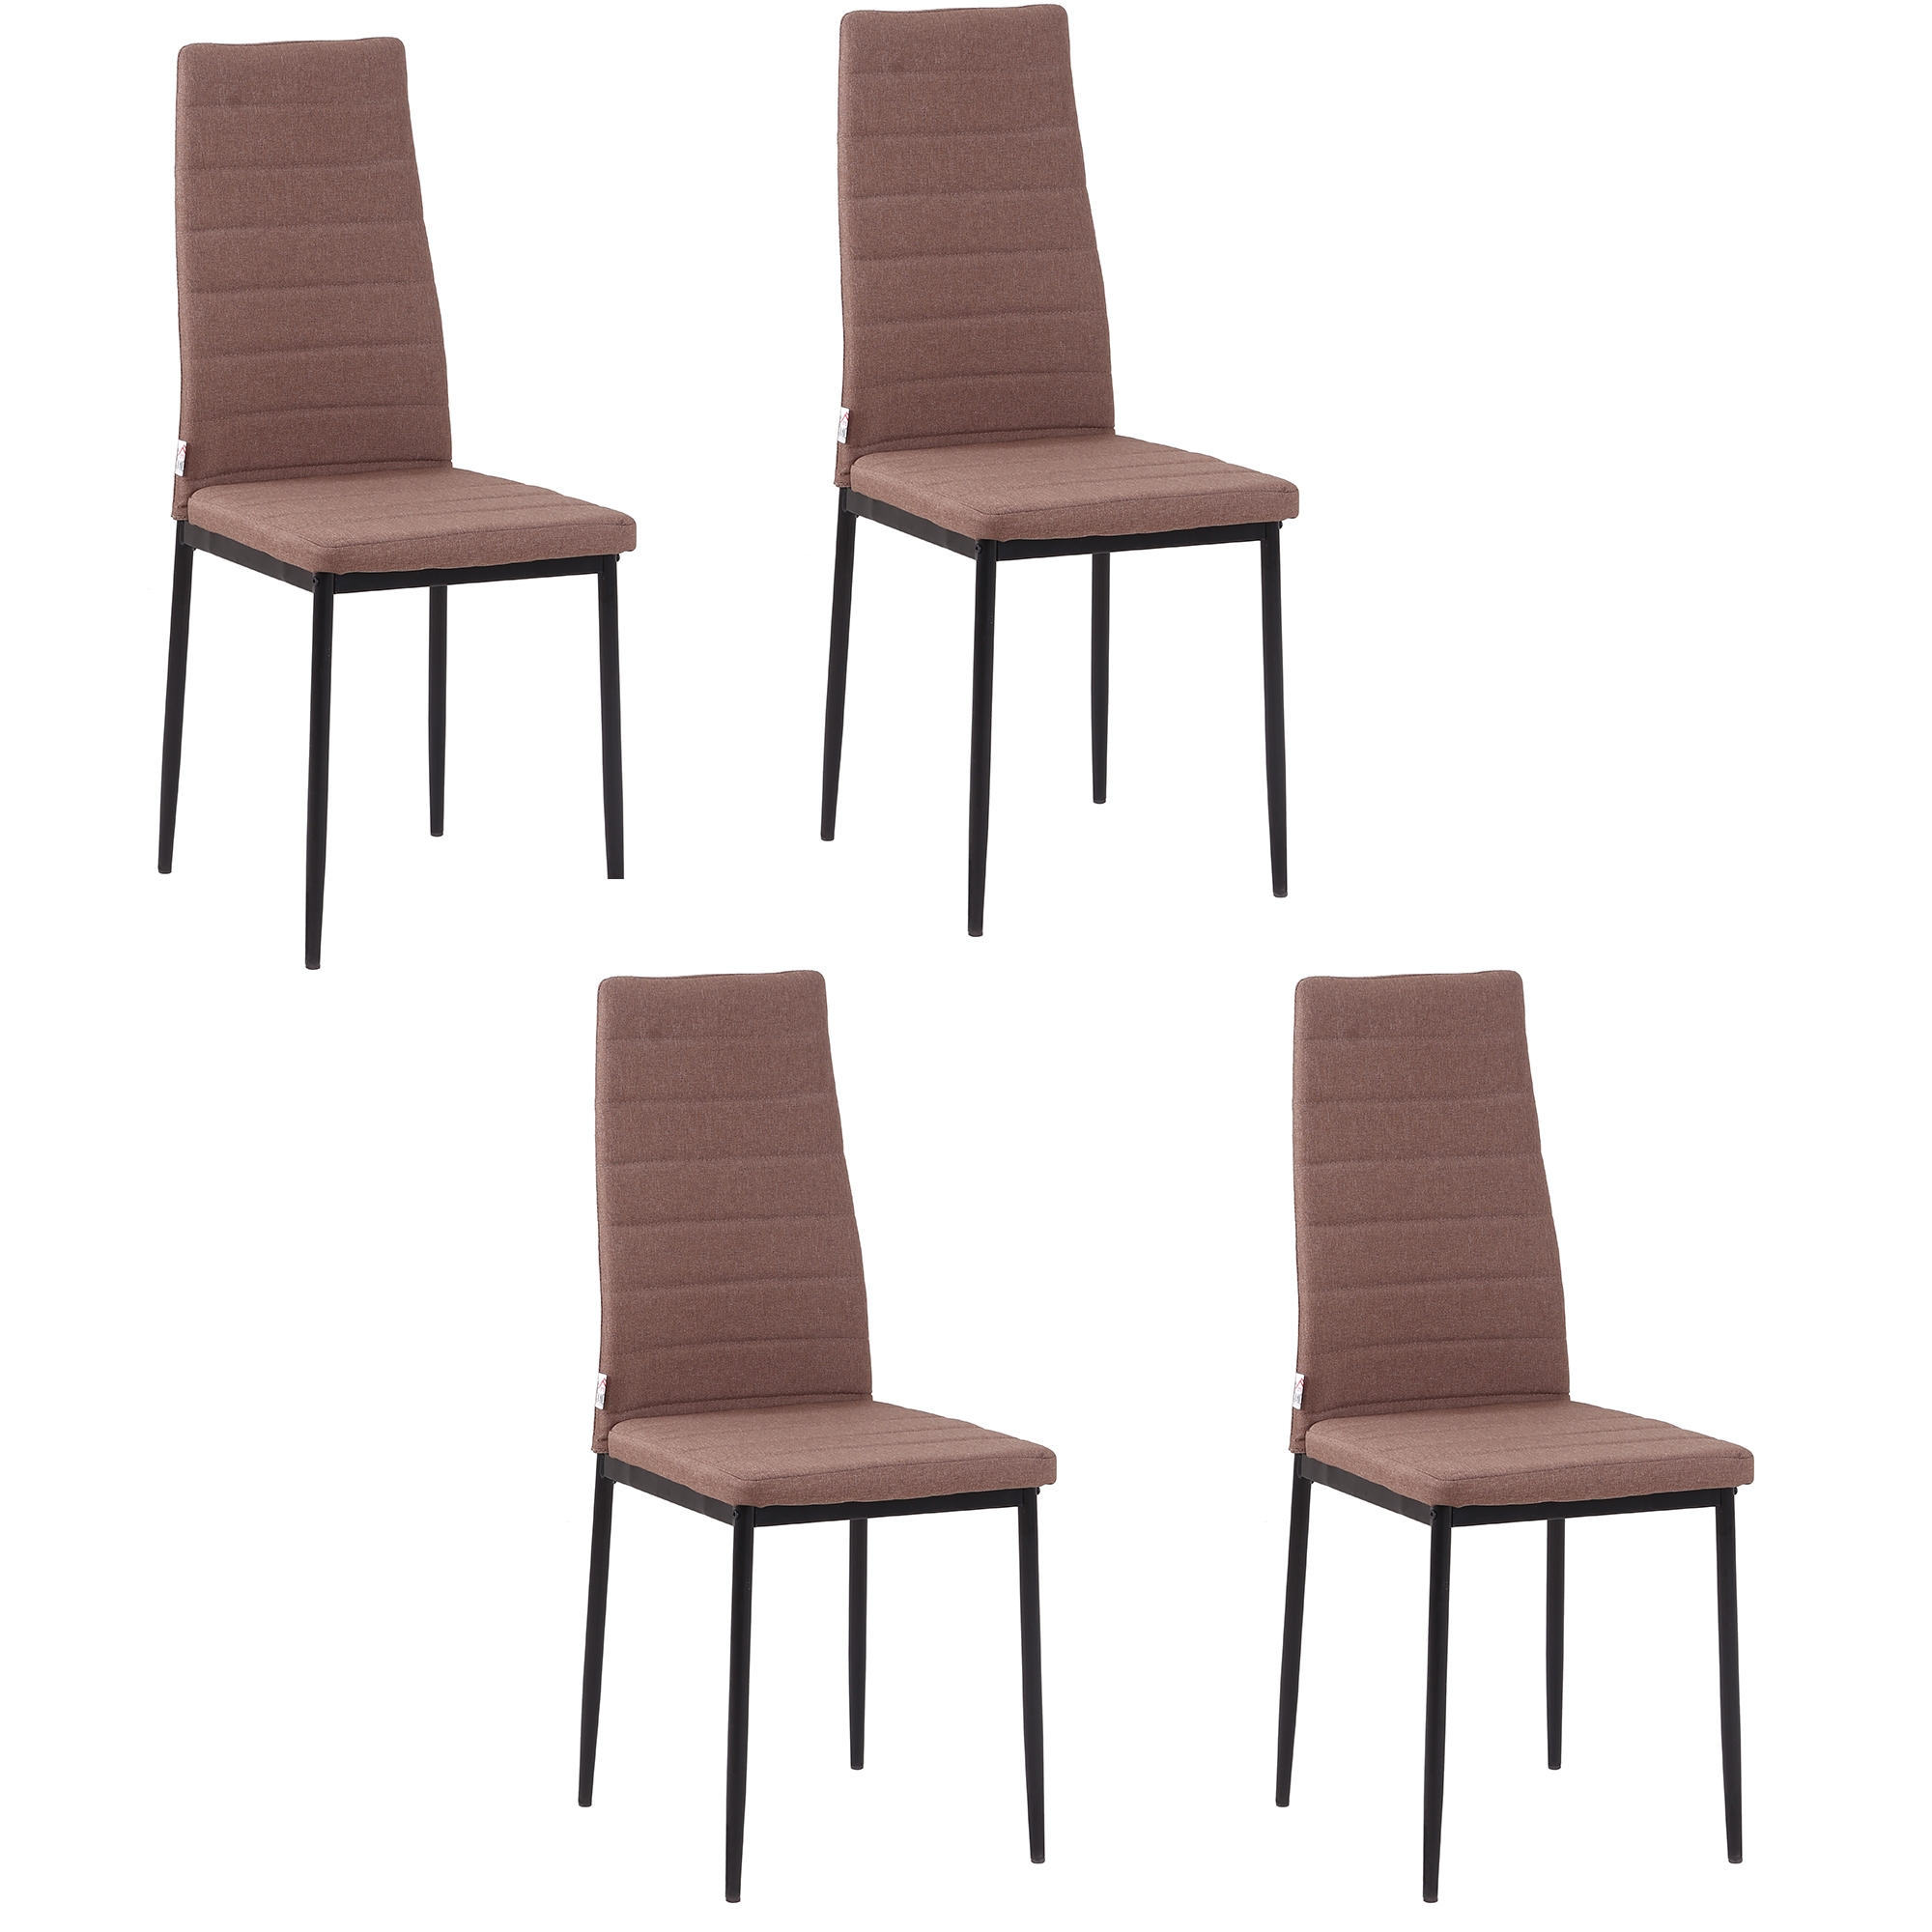 Σετ Μεταλλικές Καρέκλες με Υφασμάτινη Επένδυση 41 x 50 x 97 cm 4 τμχ Χρώματος Χακί HOMCOM 835-483V01